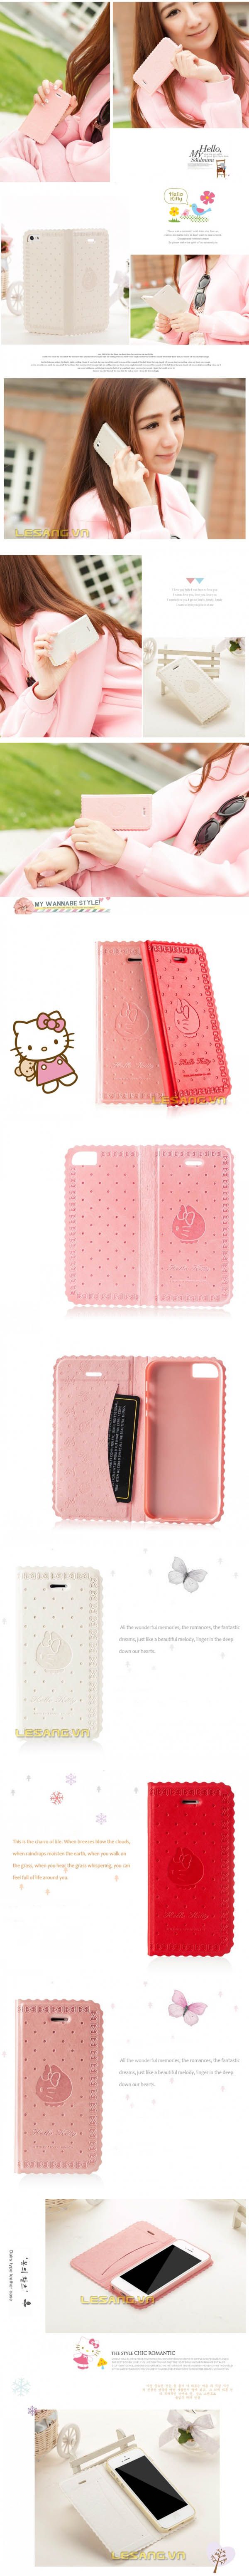 Bao da iphone 5s/s X-doira Hello Kitty 32